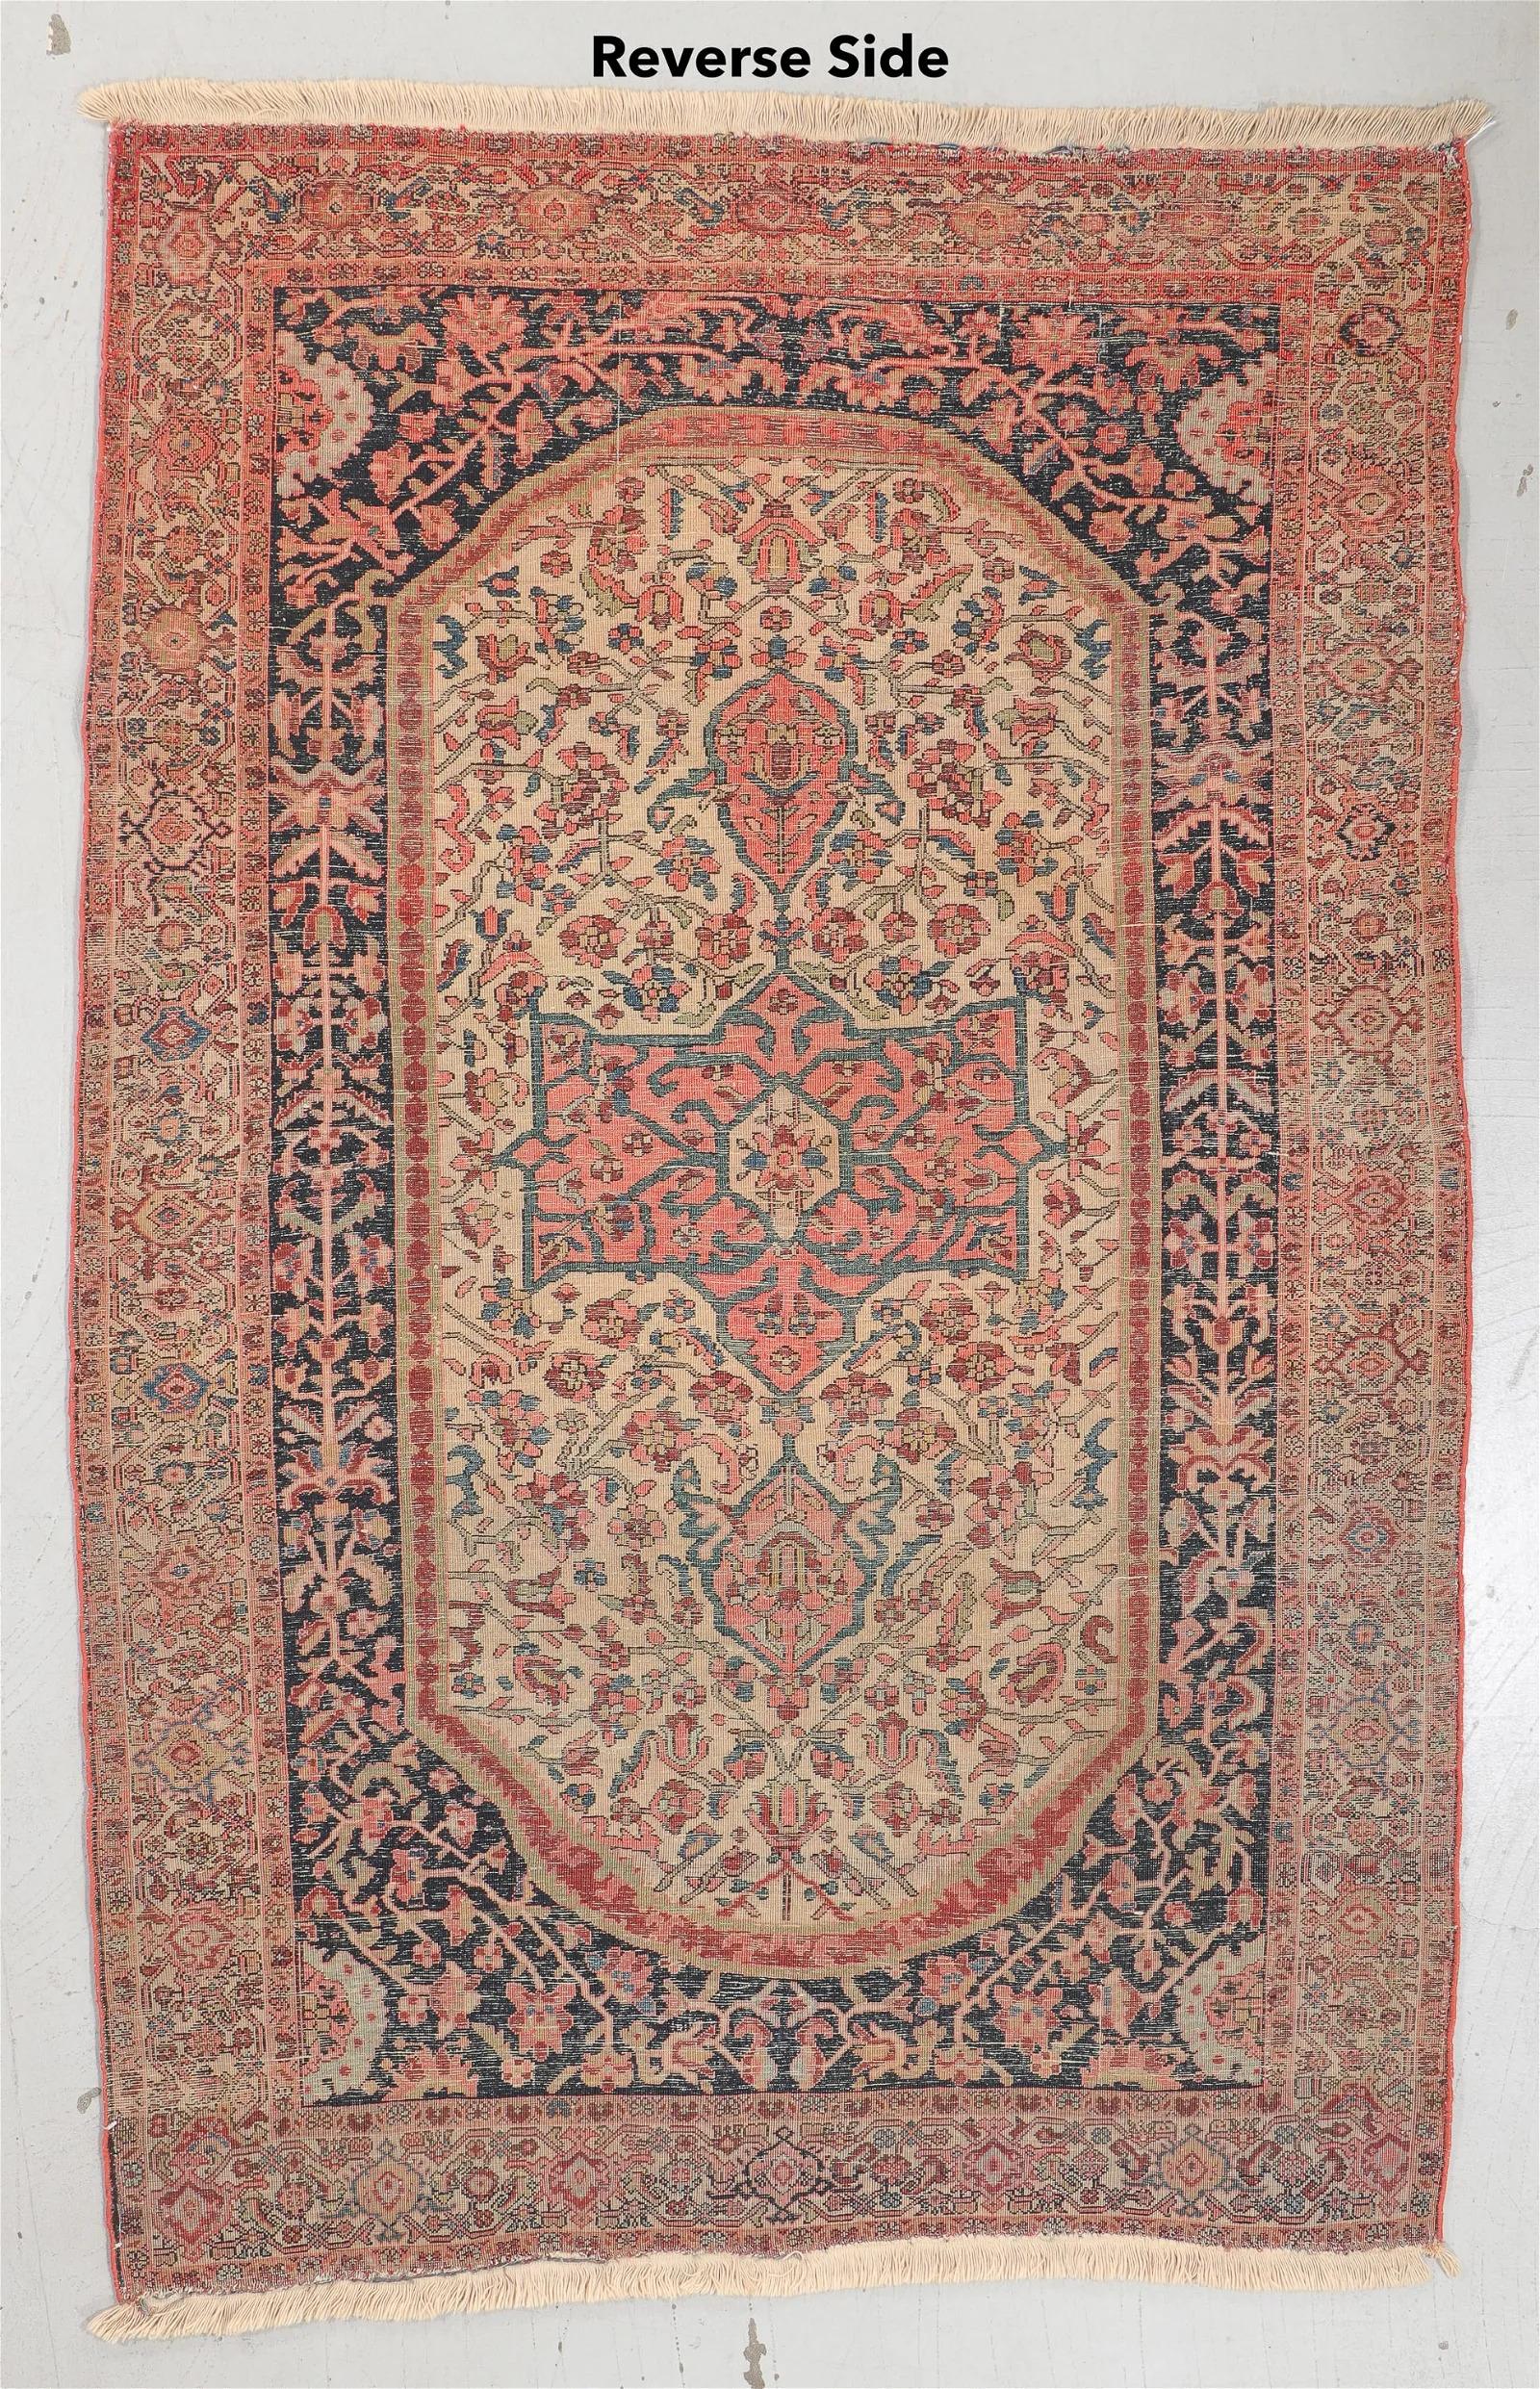 Eleg, l'élégance intemporelle du tissage persan, avec ce tapis Sarouk Ferahan, originaire de Perse et datant d'environ 1900. Mesurant 4 pieds 3 pouces de largeur et 6 pieds 10 pouces de longueur (130 x 208 cm), ce tapis captivant témoigne de la